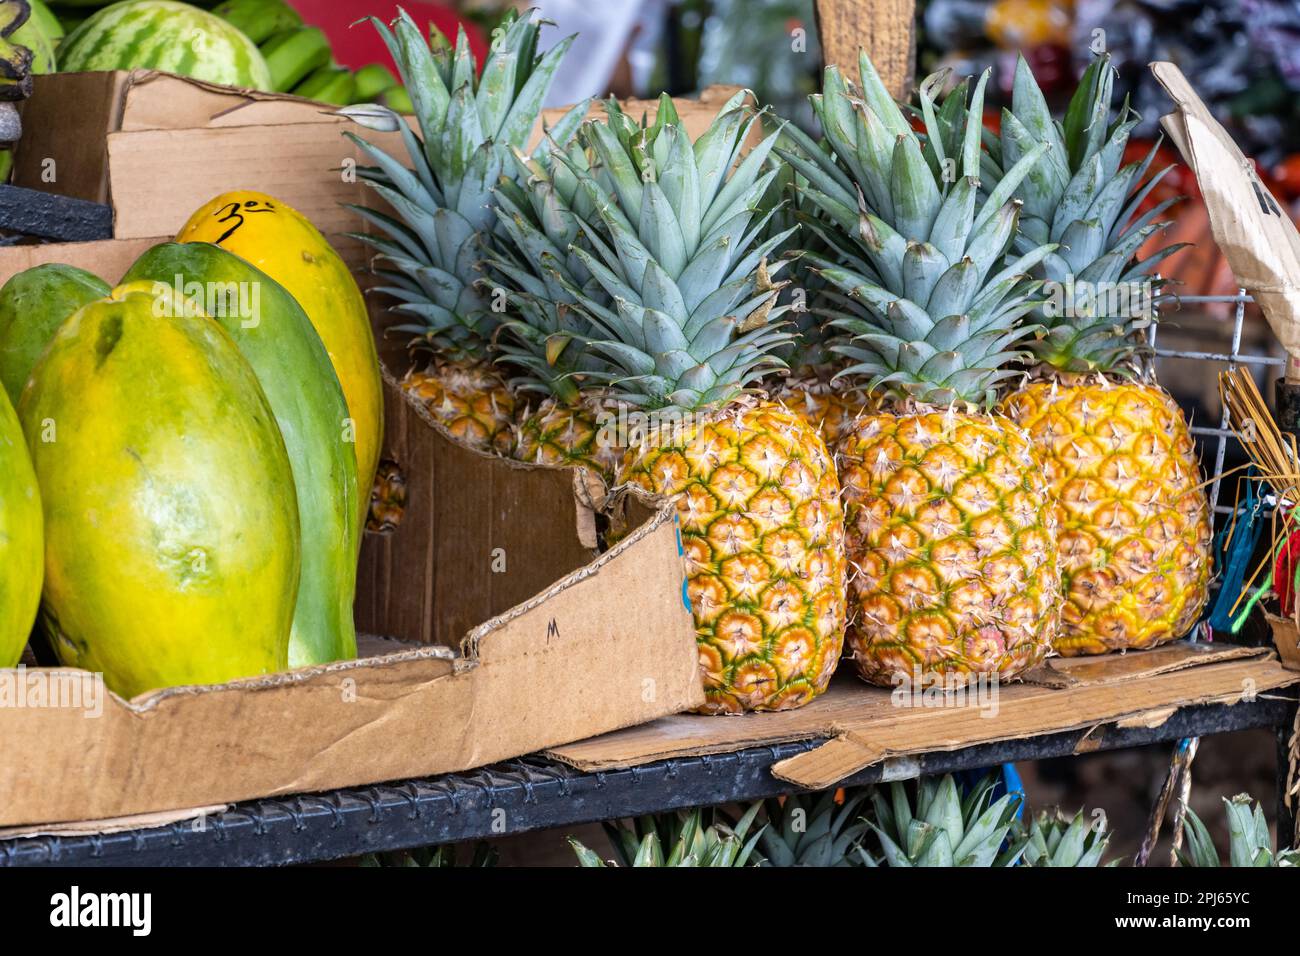 Tropische Früchte zum Verkauf auf einem Markt in Panama. Ananas, Mangos, Wassermelonen und Bananen. Stockfoto